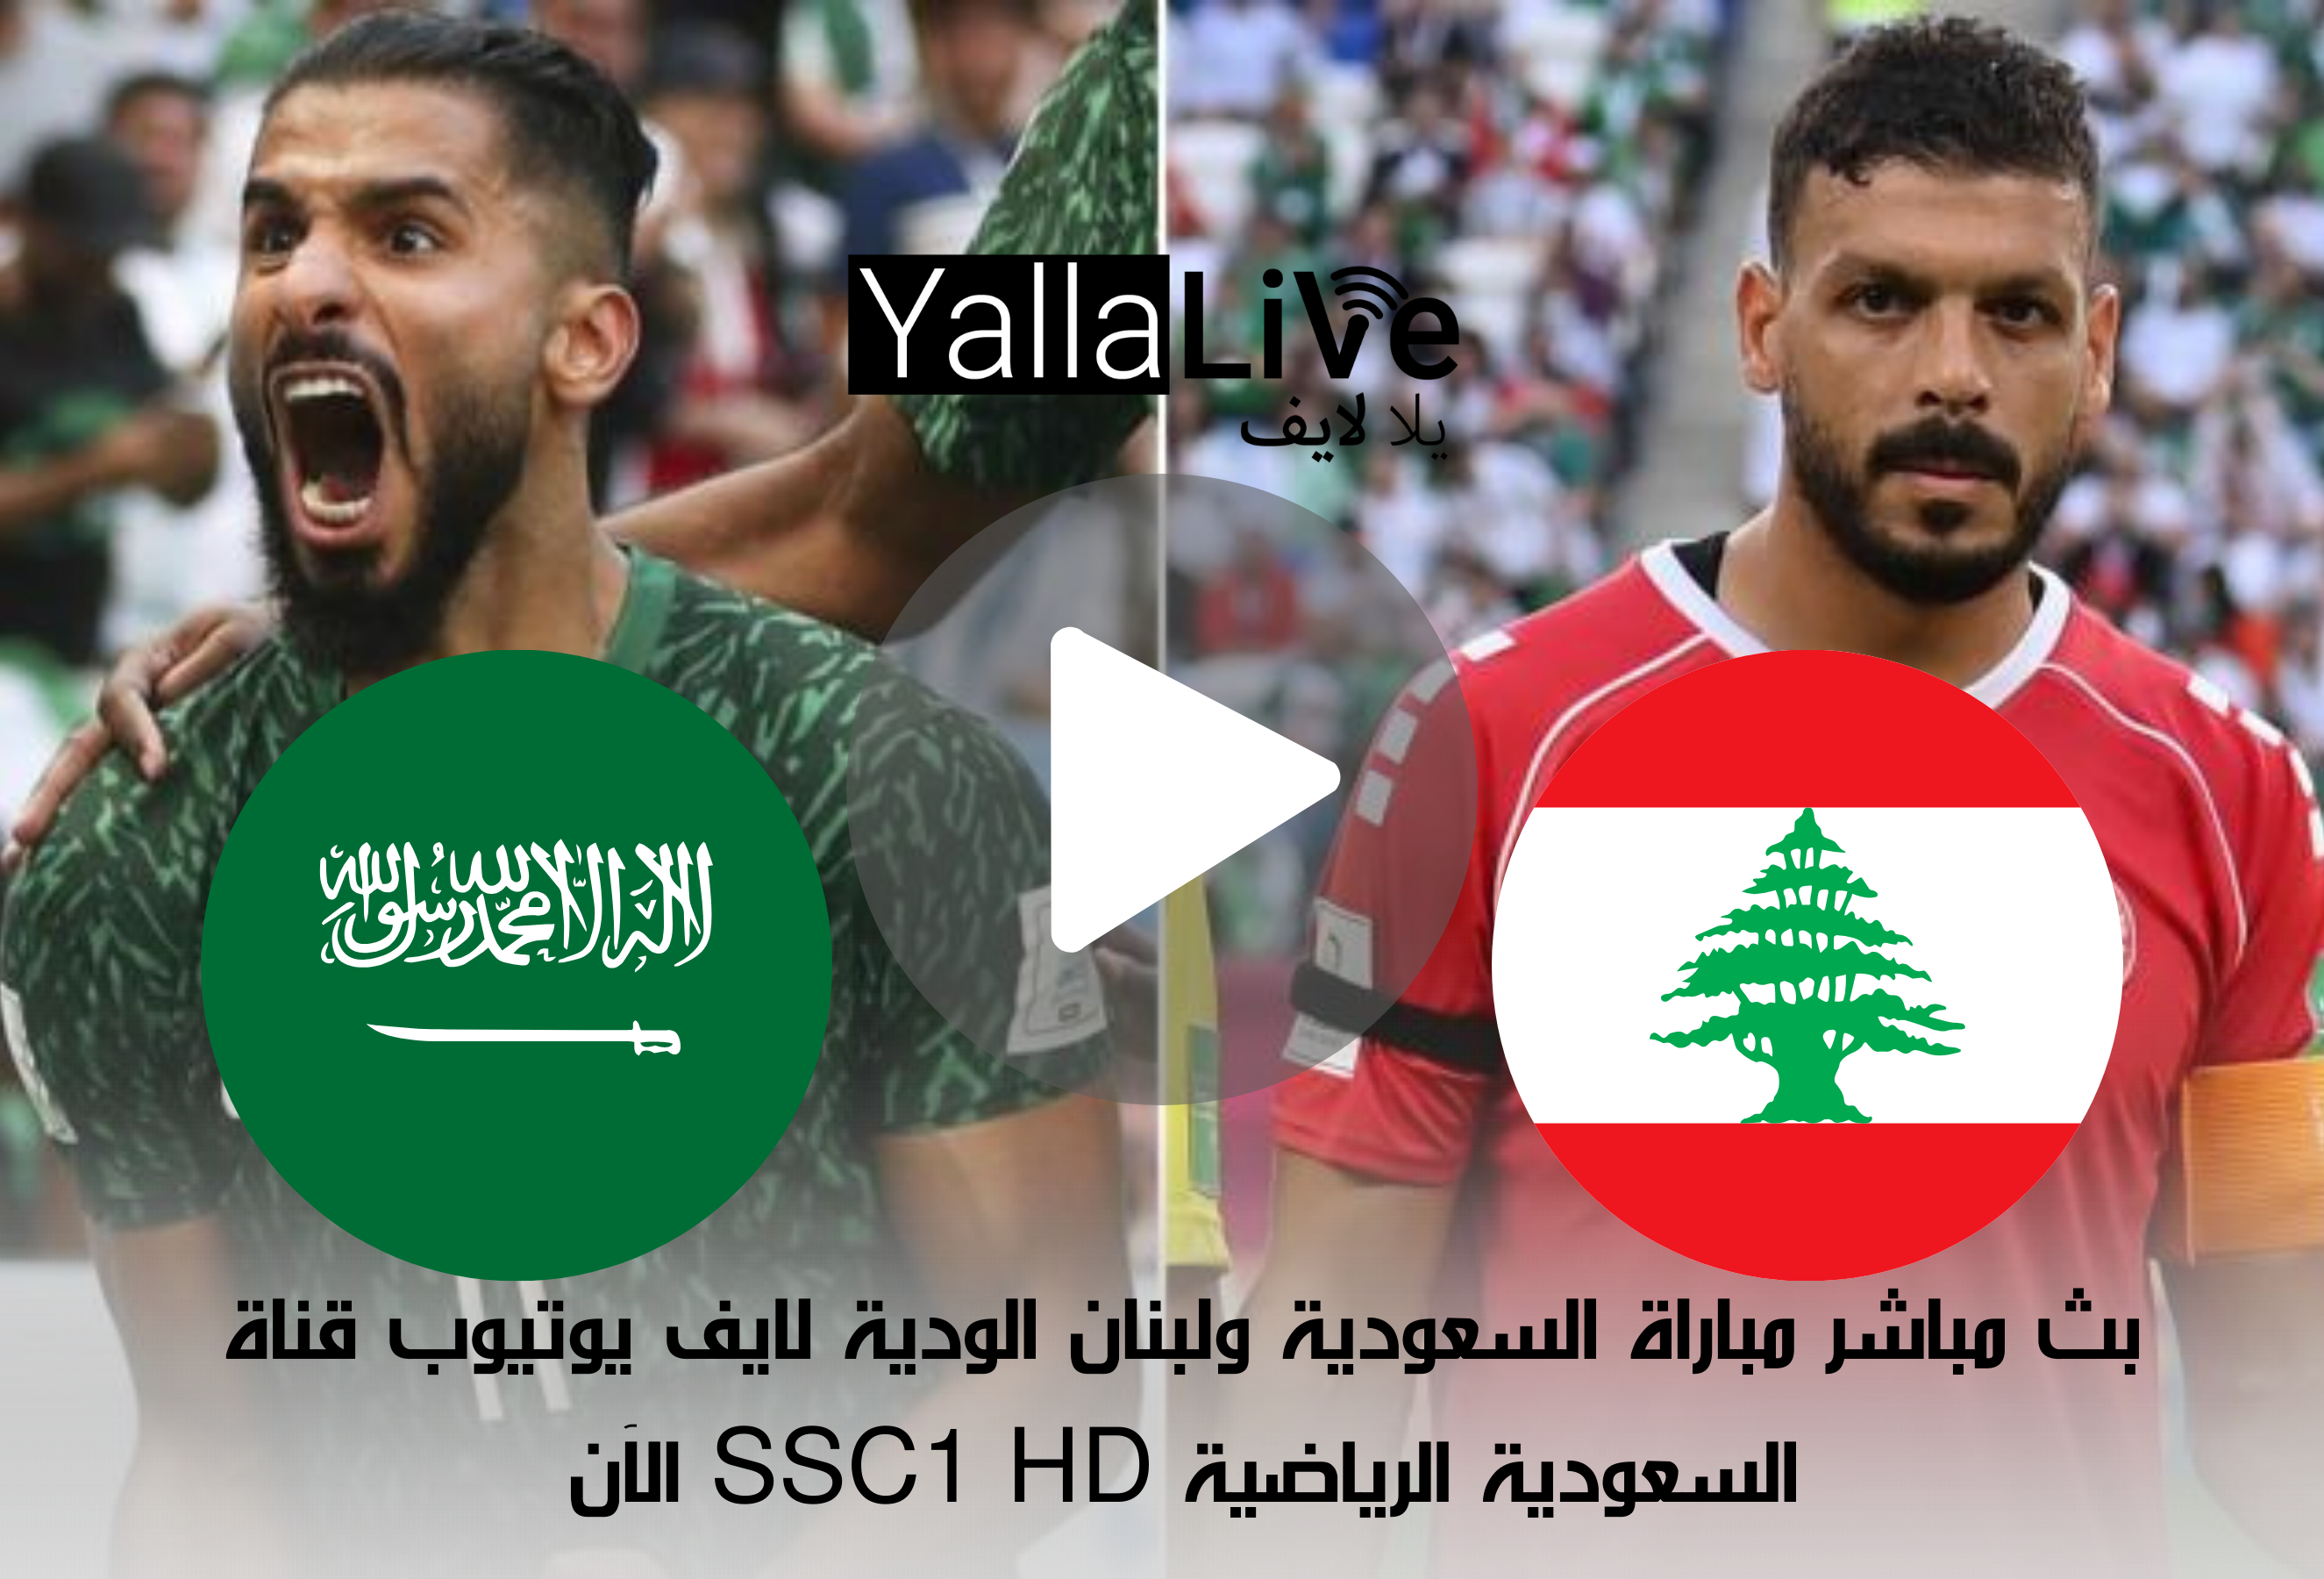 بث مباشر مباراة السعودية ولبنان الودية لايف يوتيوب قناة السعودية الرياضية SSC1 HD الآن